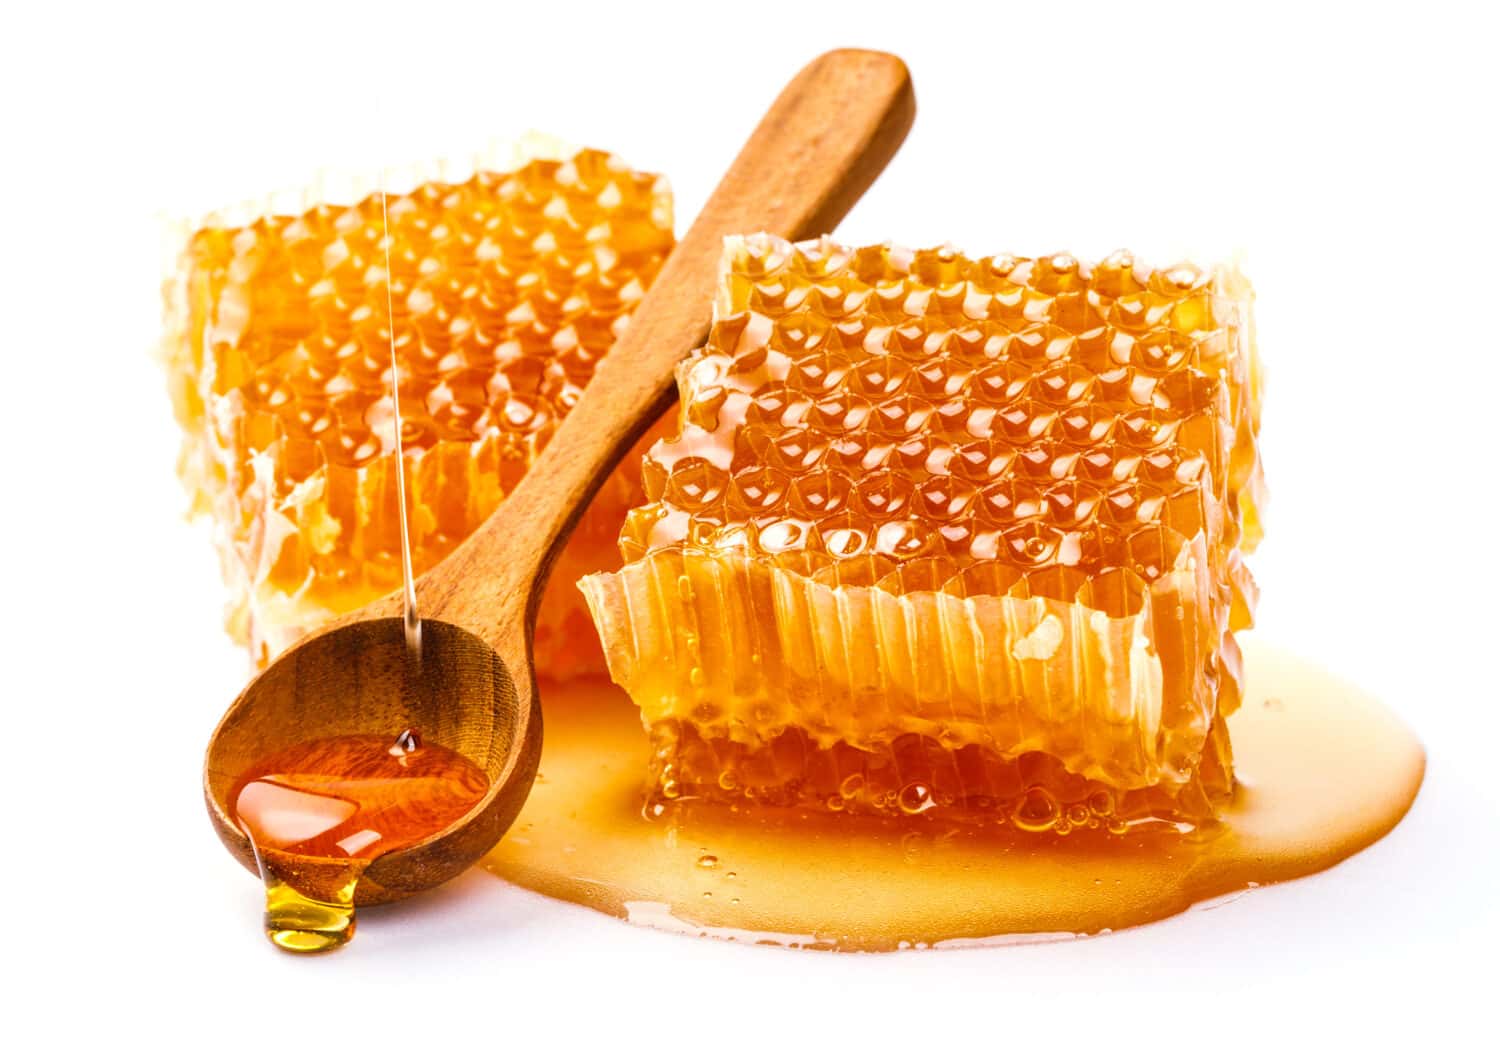 Favo con cucchiaio di miele isolato su sfondo bianco, prodotti delle api secondo il concetto di ingredienti naturali biologici